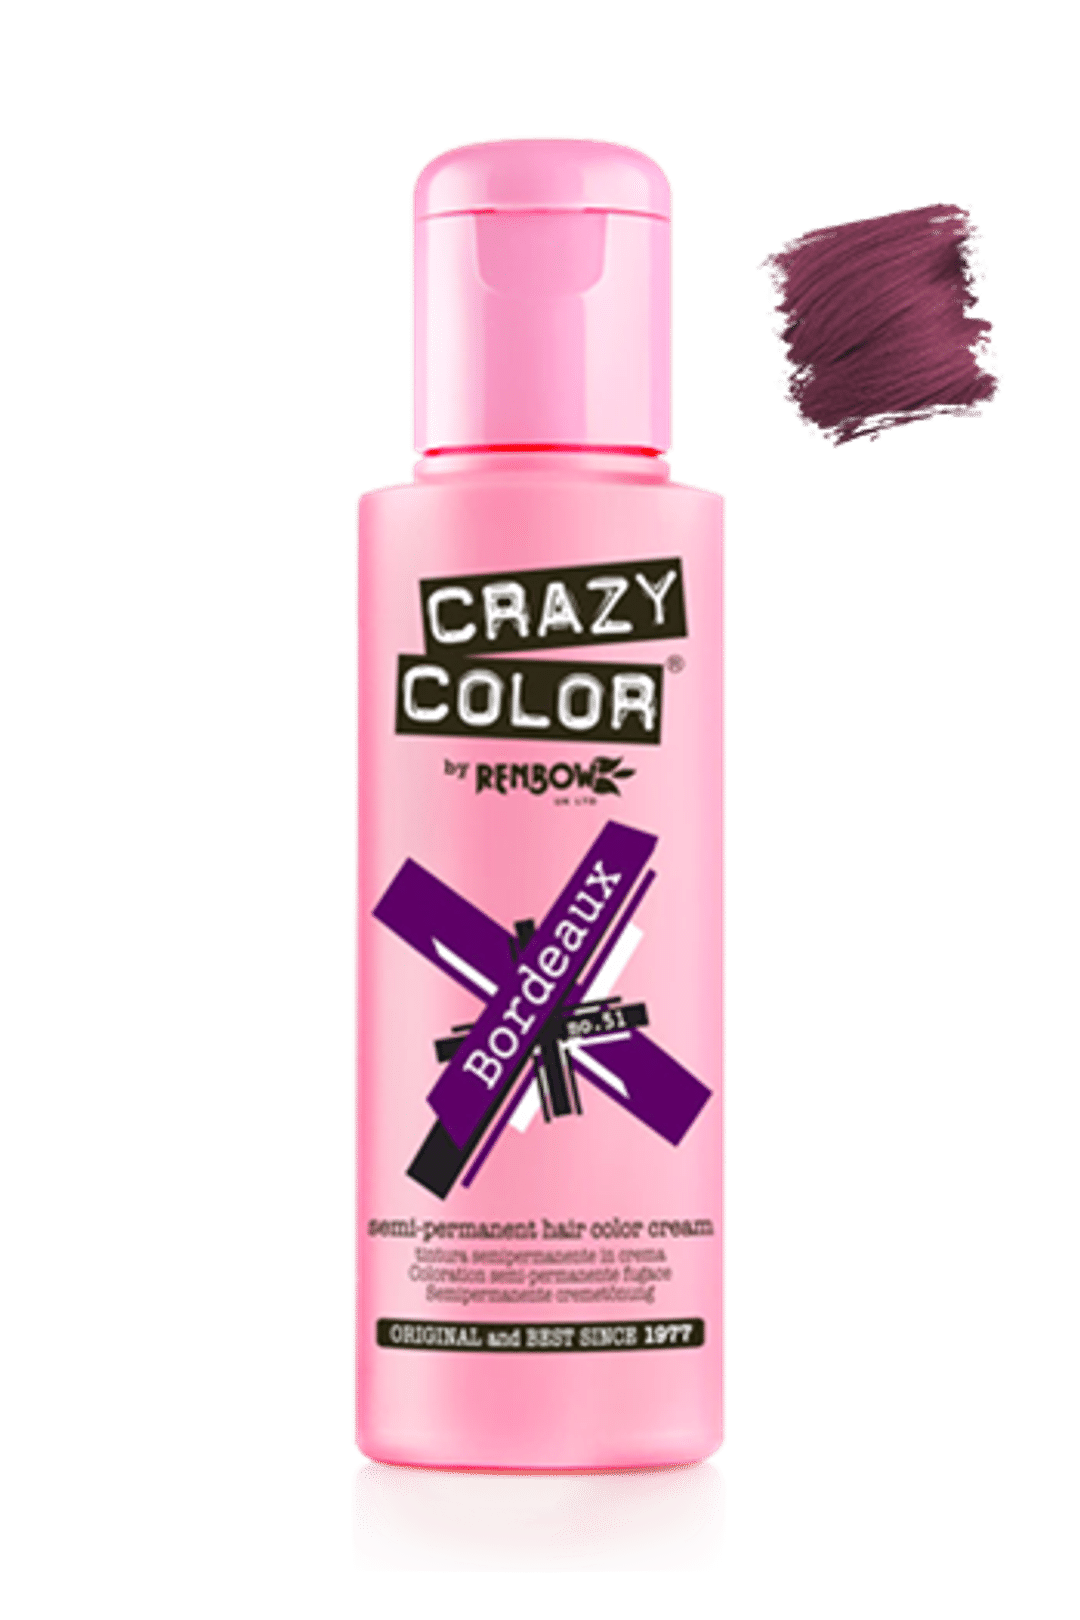 Crazy Color Semi Permanent Hair Color Cream - Bordeaux